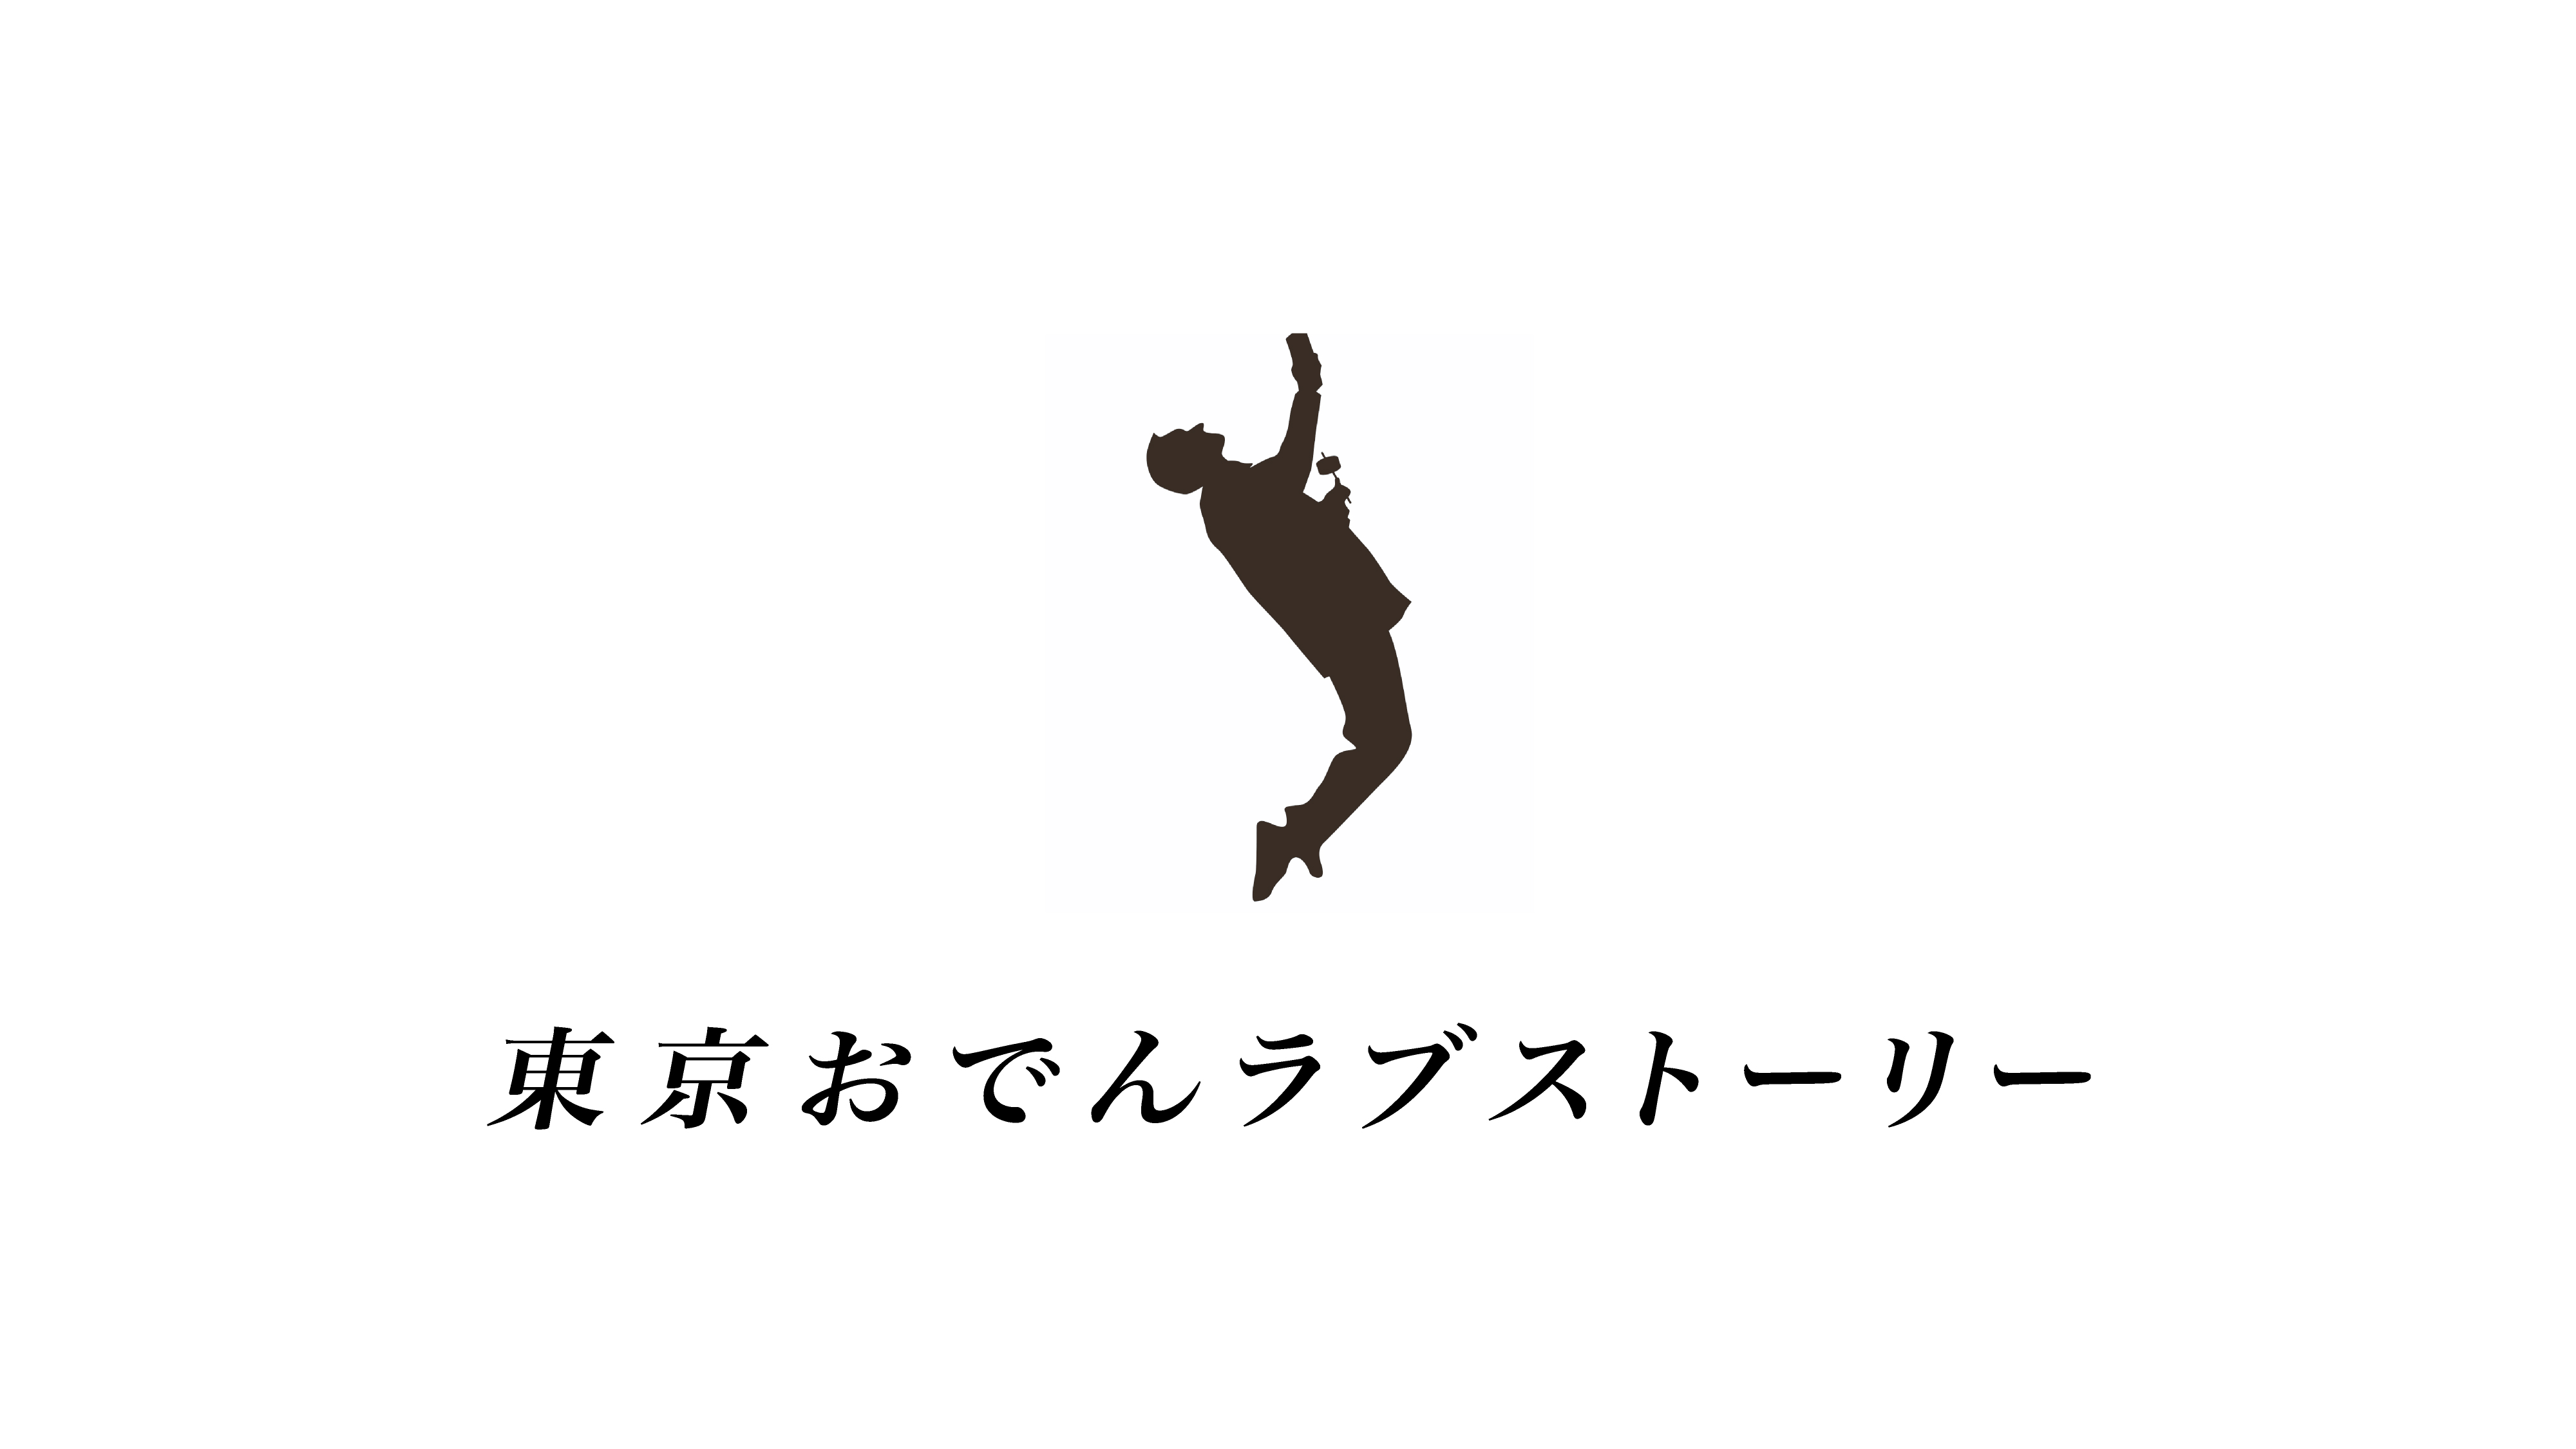 19年11月日 水 Uracori 銀座裏コリドー に 恵比寿の伝説的おでん屋台 東京おでんラブストーリー Odelove Com がグランドオープン Jipのプレスリリース